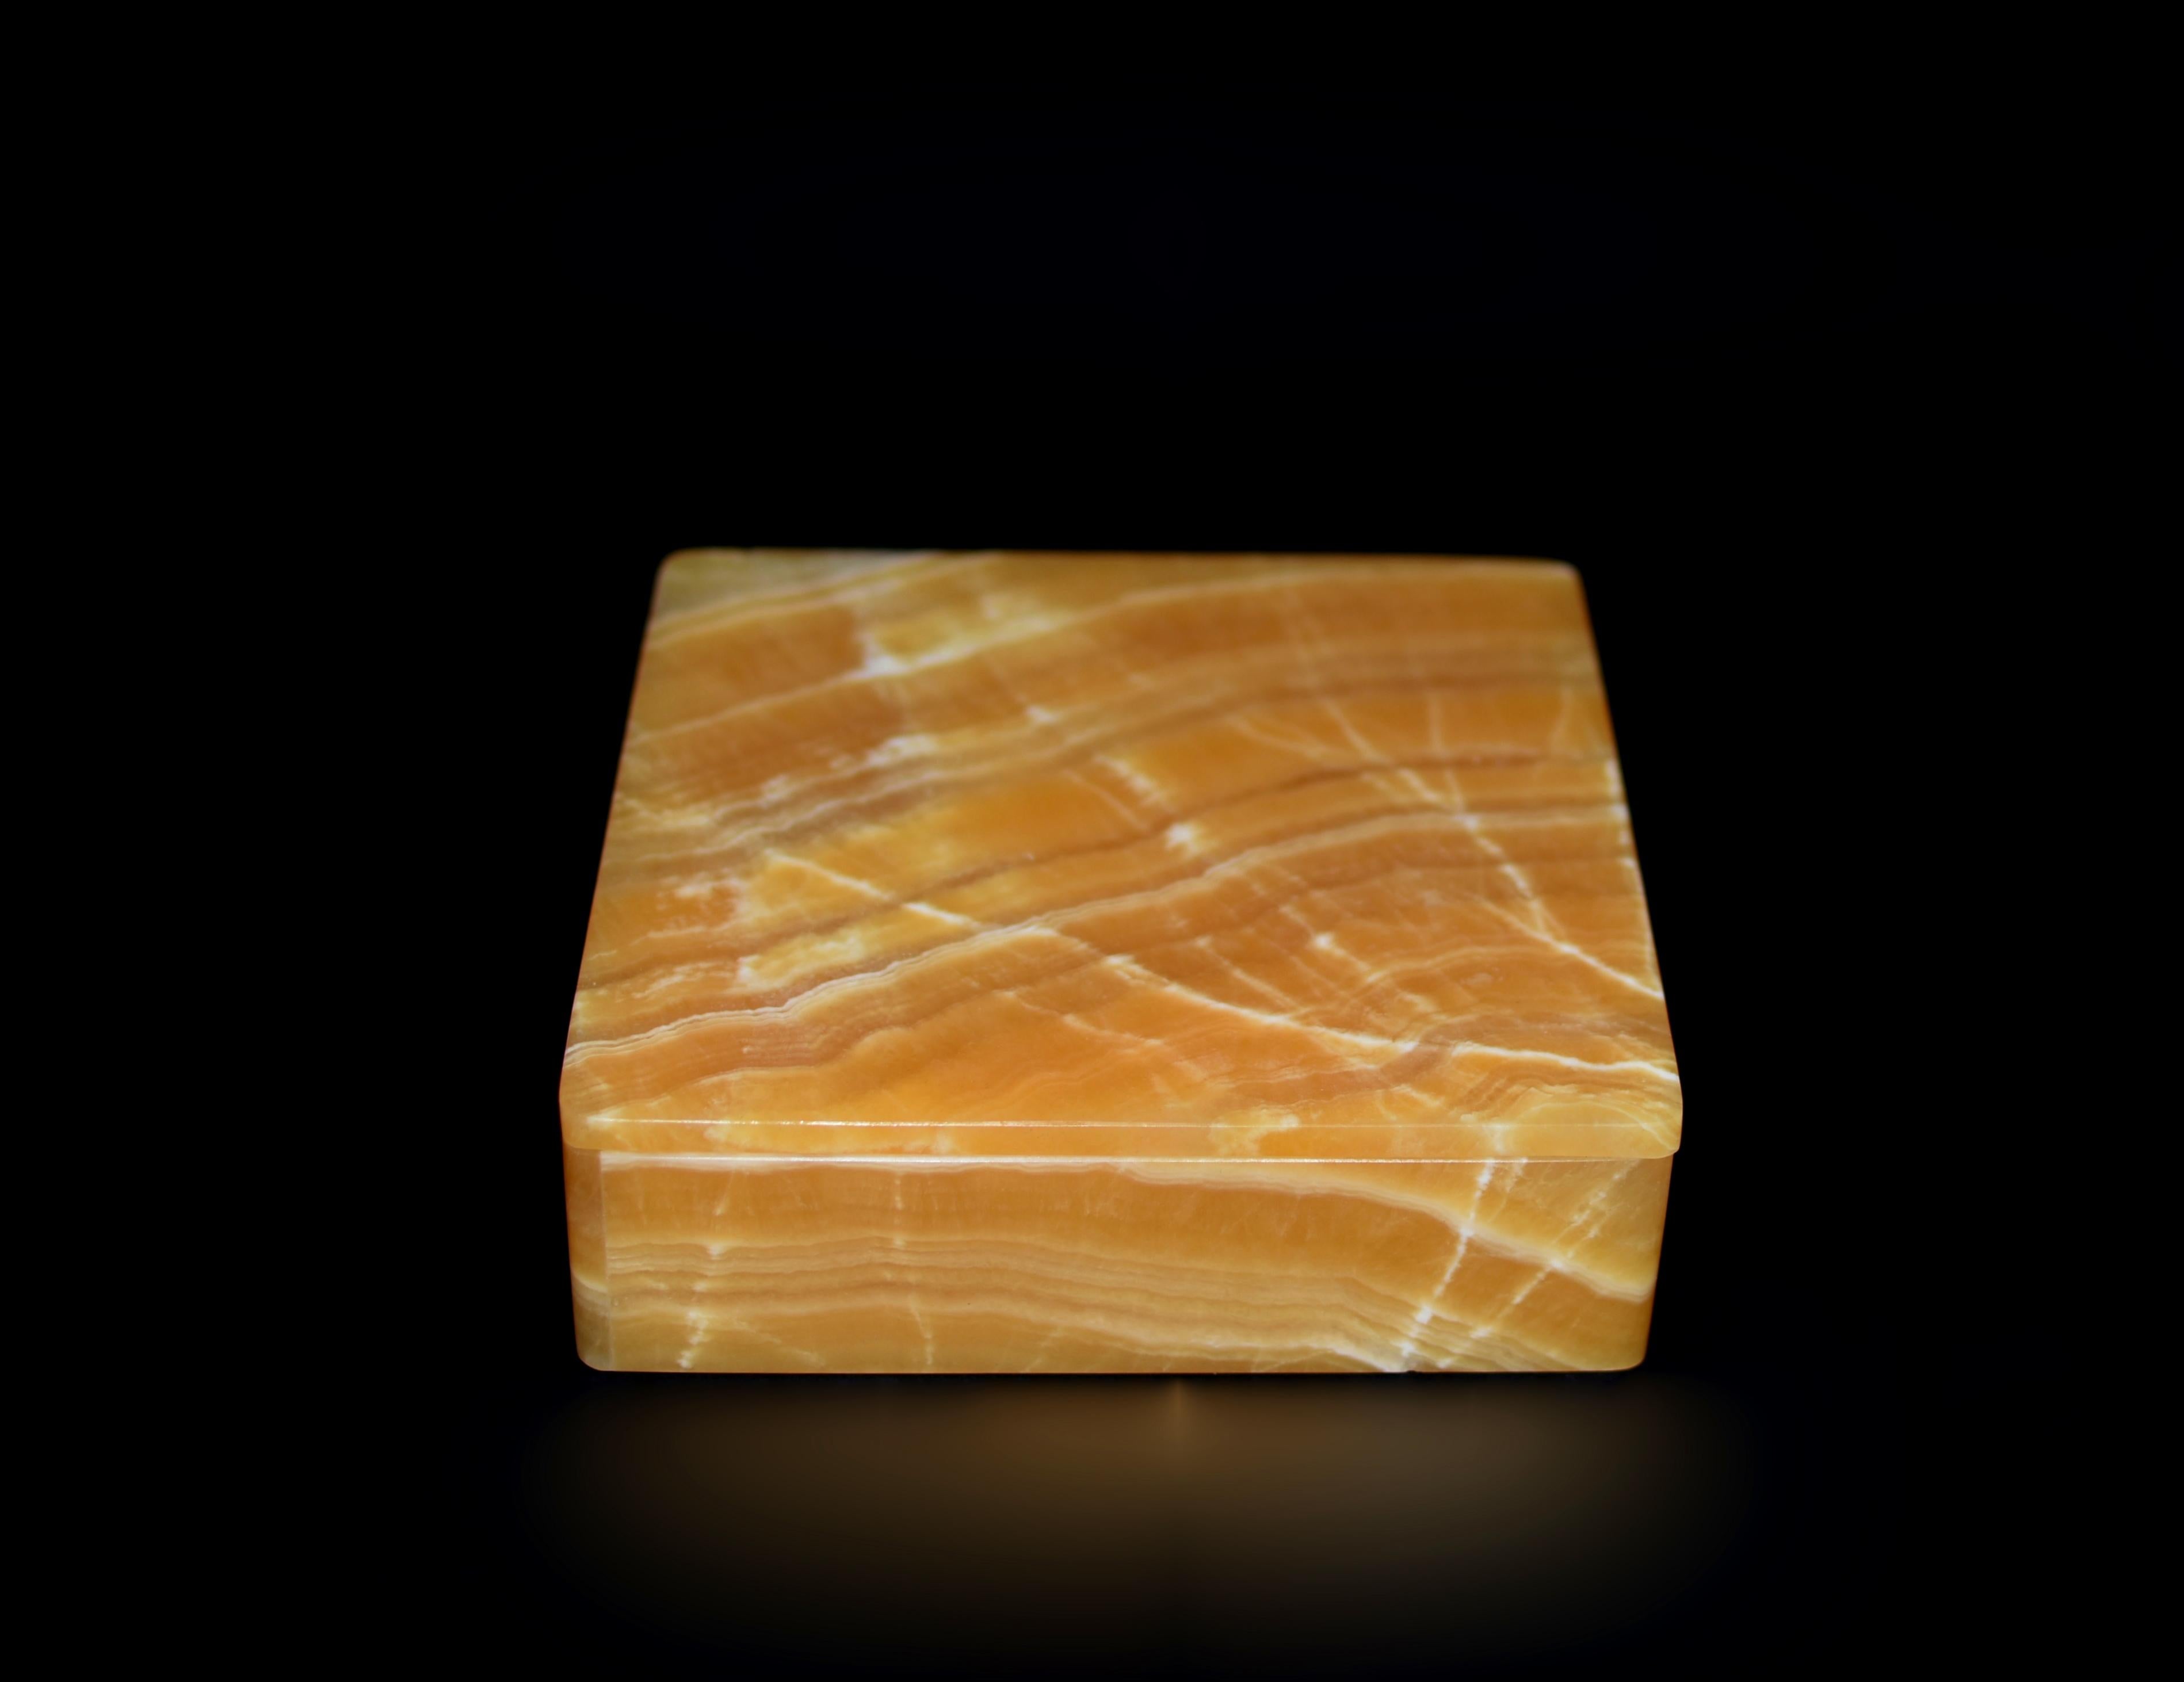 Cette création exquise est fabriquée à partir d'onyx de calcite miel très rare provenant du Pakistan, en utilisant uniquement des planches uniques (dalle complète d'un seul tenant) de pierres pour tous les côtés de la boîte. Fabriqué à la main par